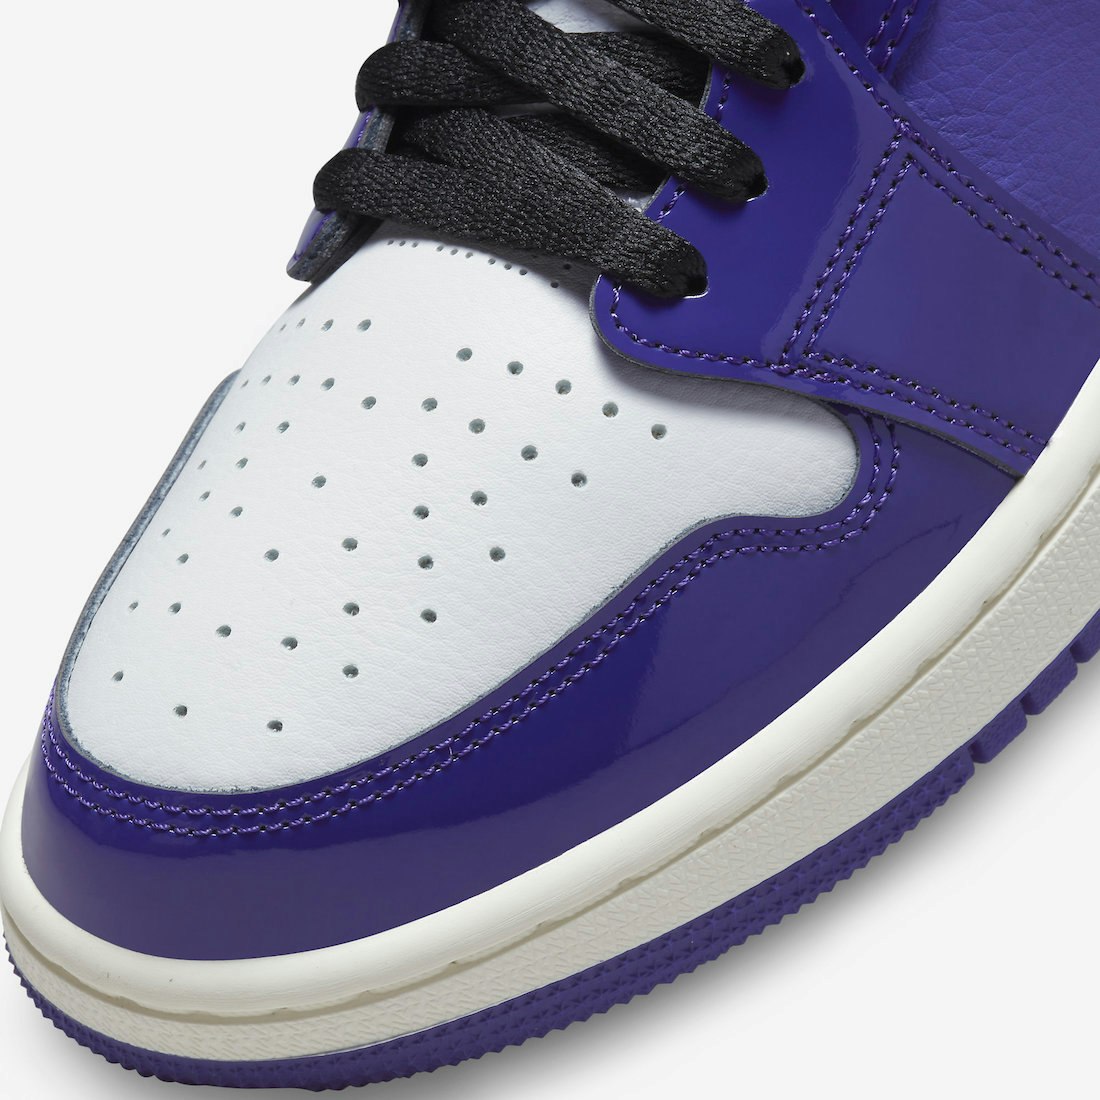 Air Jordan 1 Zoom Comfort "Purple Patent"